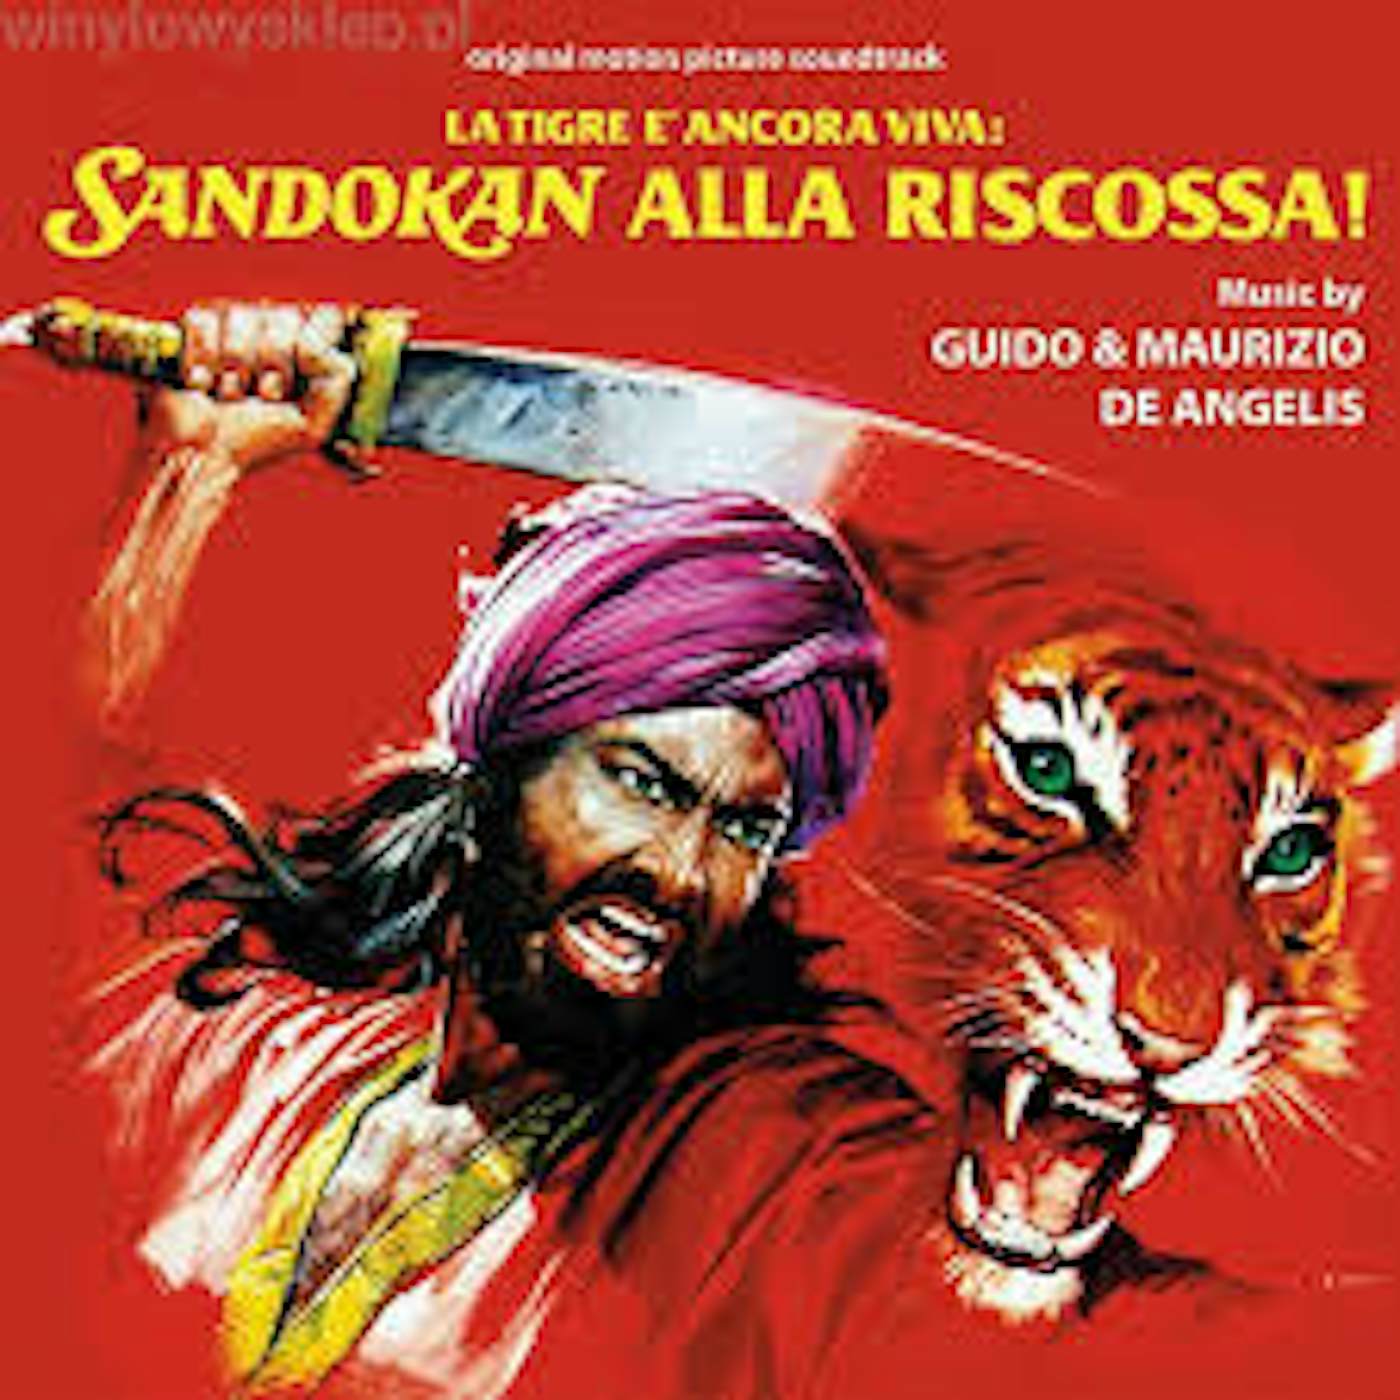 Guido & Maurizio De Angelis LA TIGRA E ANCORA VIVA: SANDOKAN ALLA RISCOSSA Vinyl Record